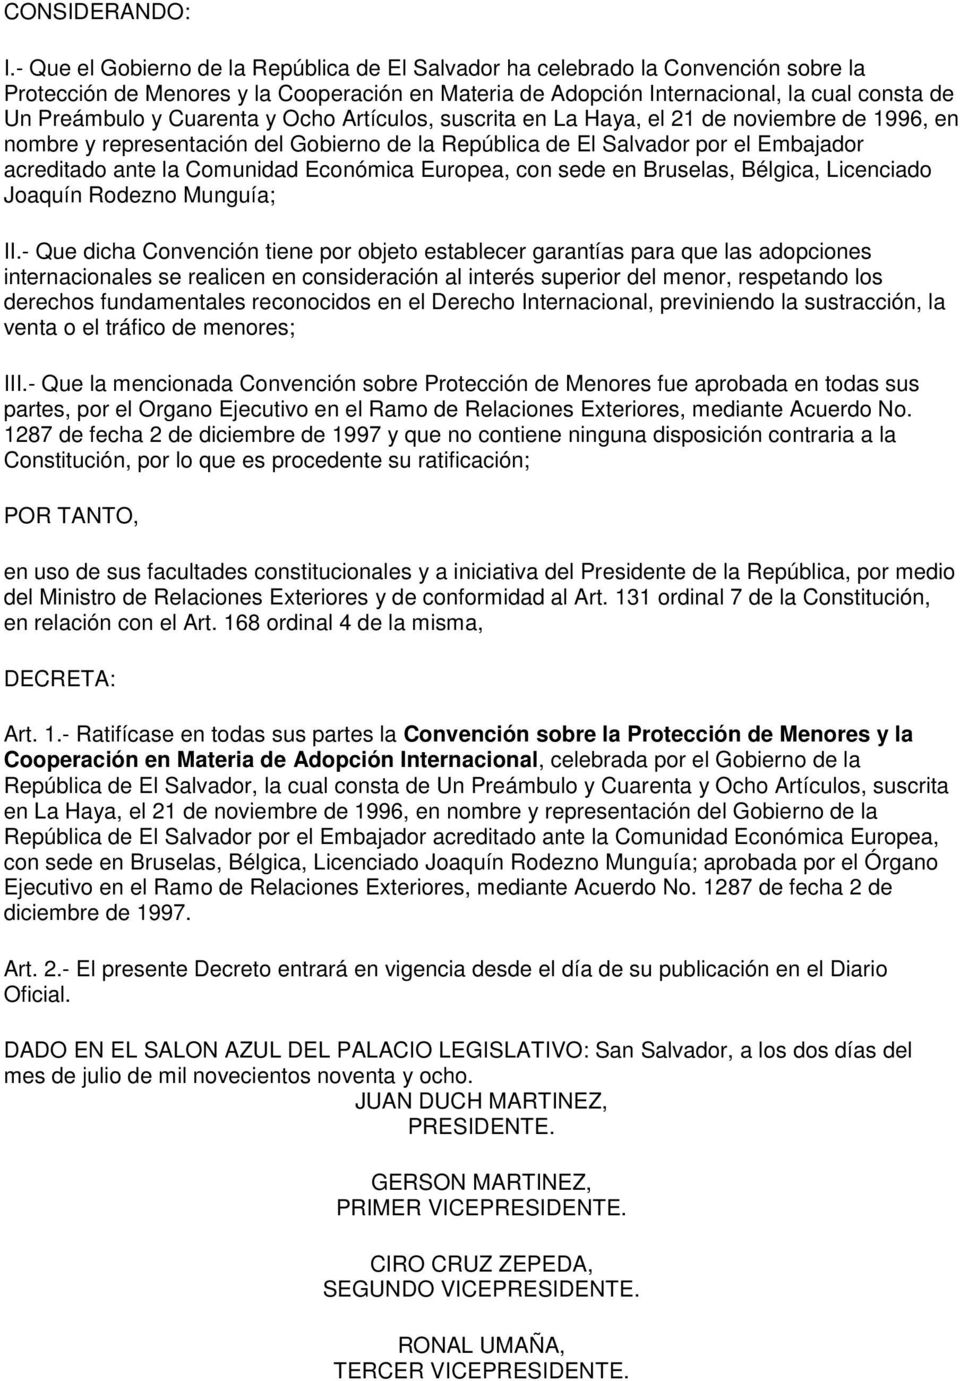 Cuarenta y Ocho Artículos, suscrita en La Haya, el 21 de noviembre de 1996, en nombre y representación del Gobierno de la República de El Salvador por el Embajador acreditado ante la Comunidad